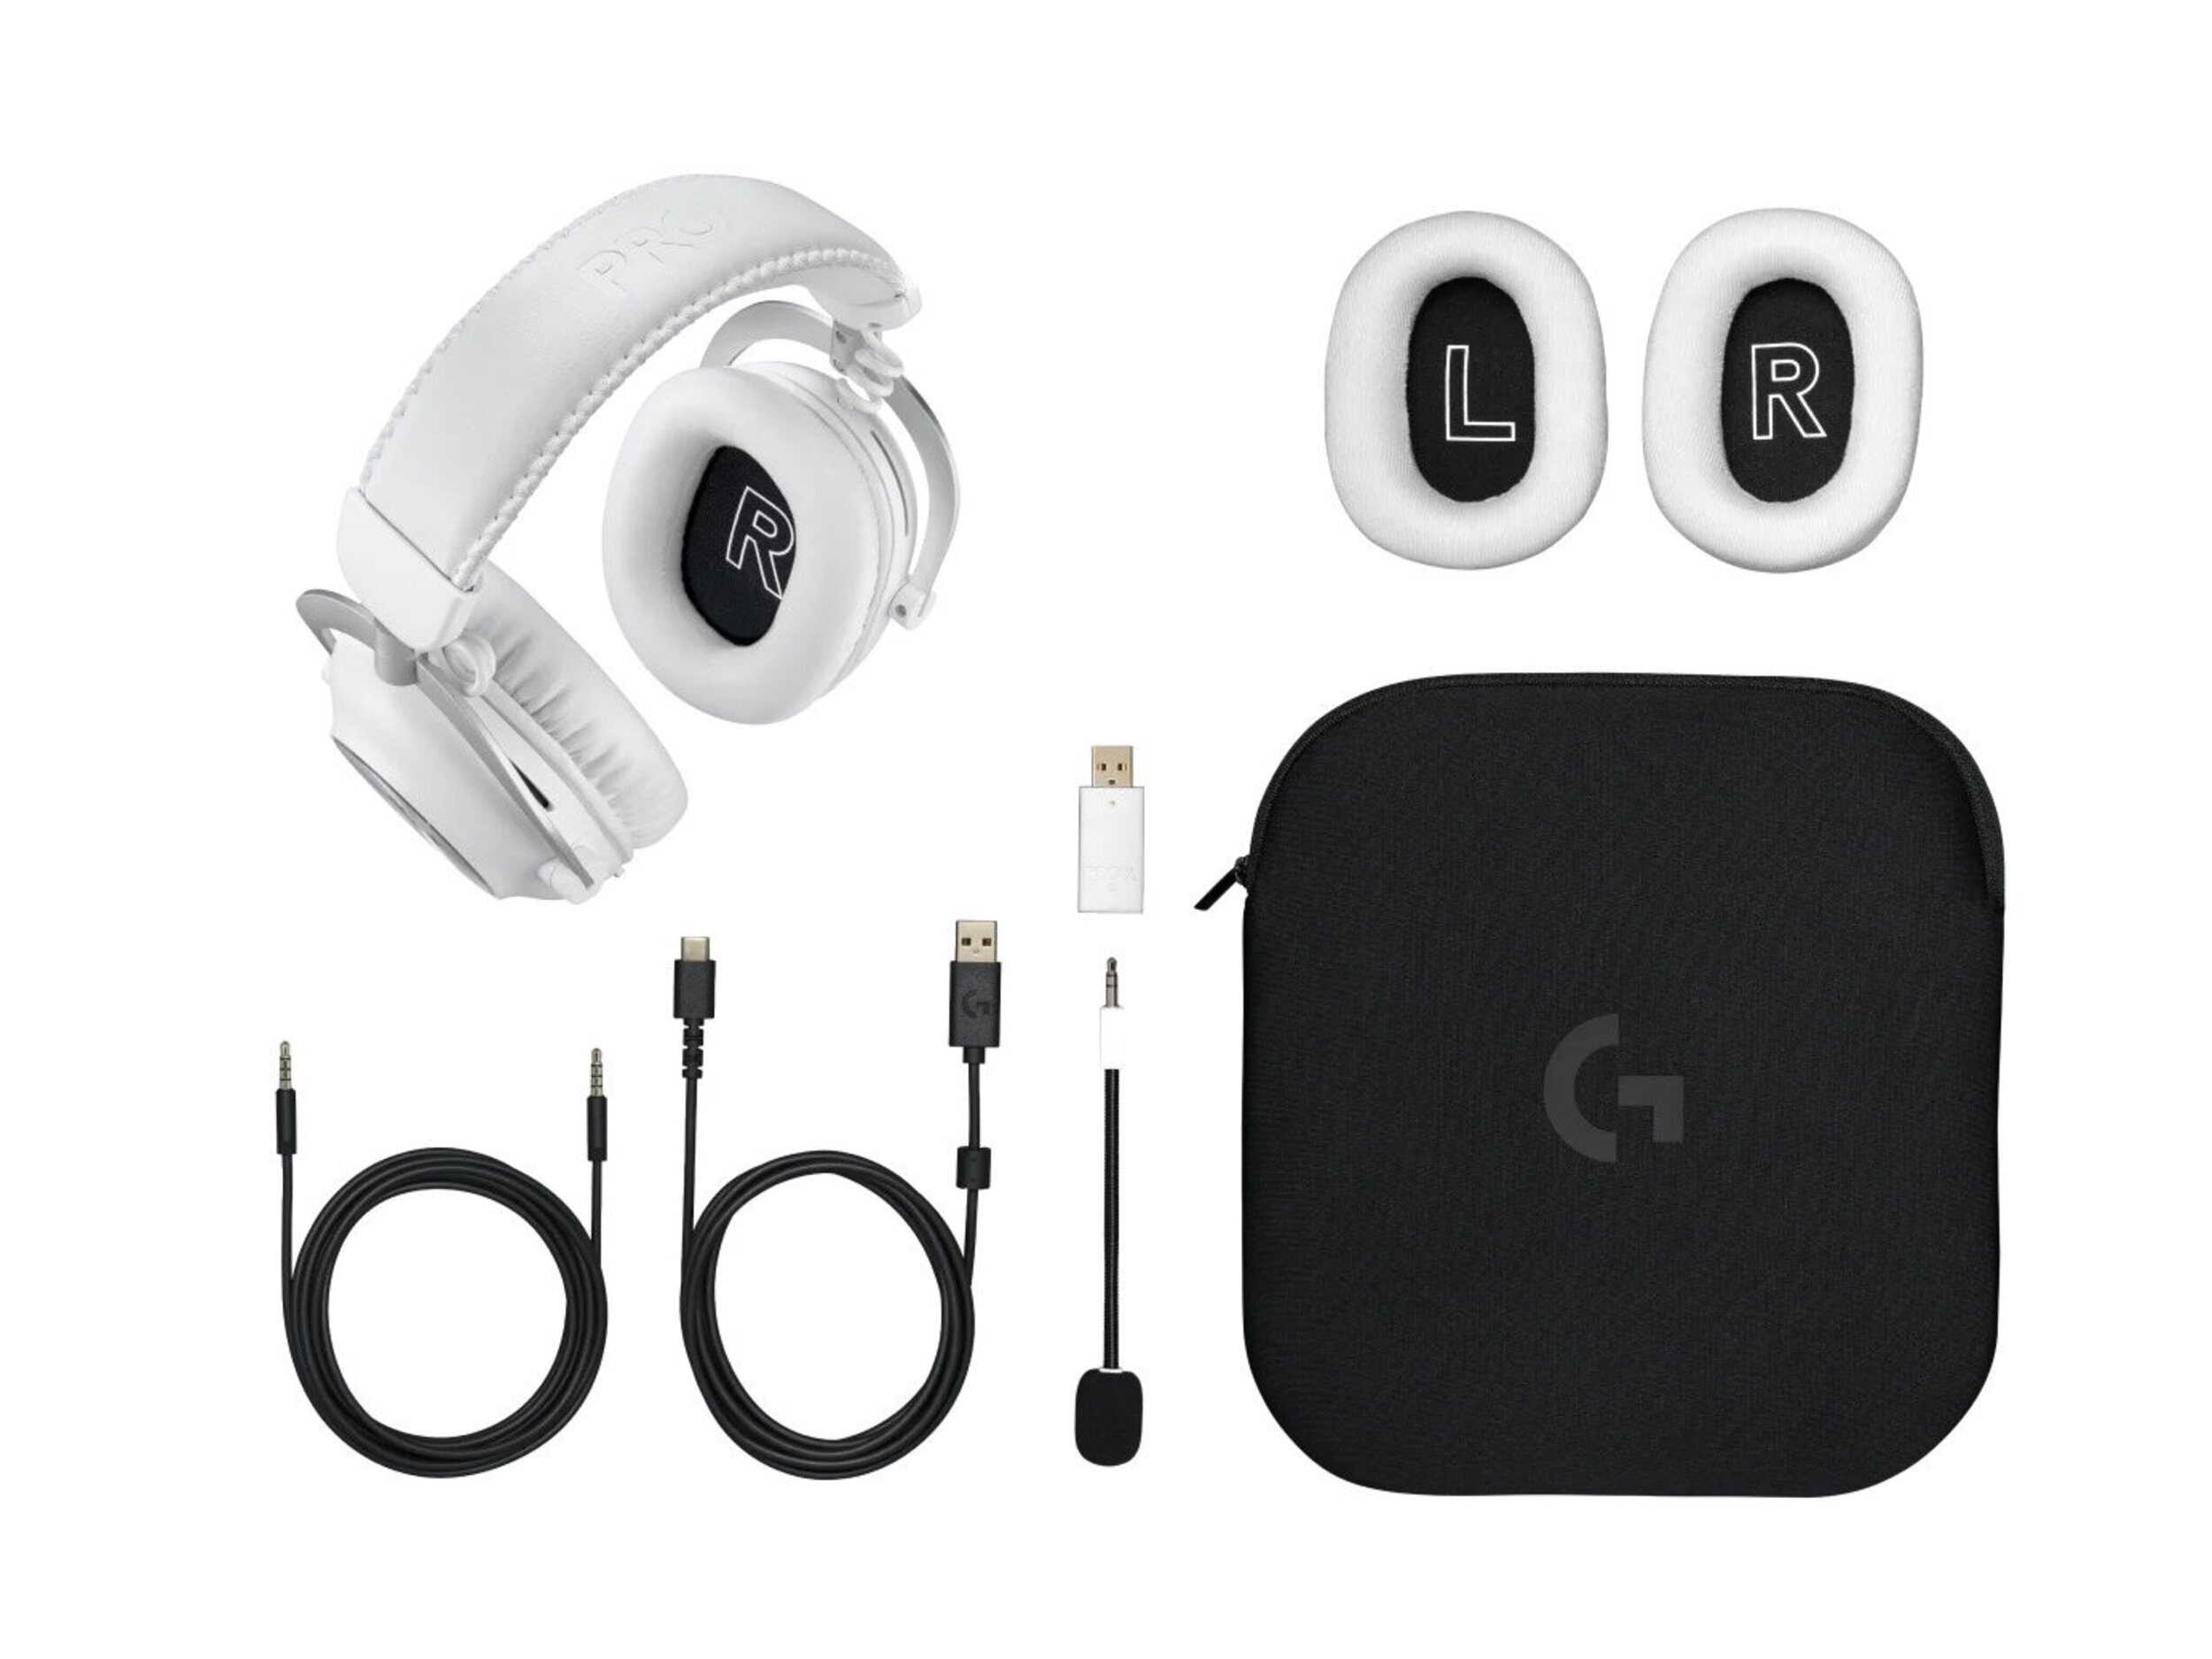 Logitech Pro X 2 Lightspeed - Los auriculares vienen acompañados con almohadillas, cables y bolsa de viaje.